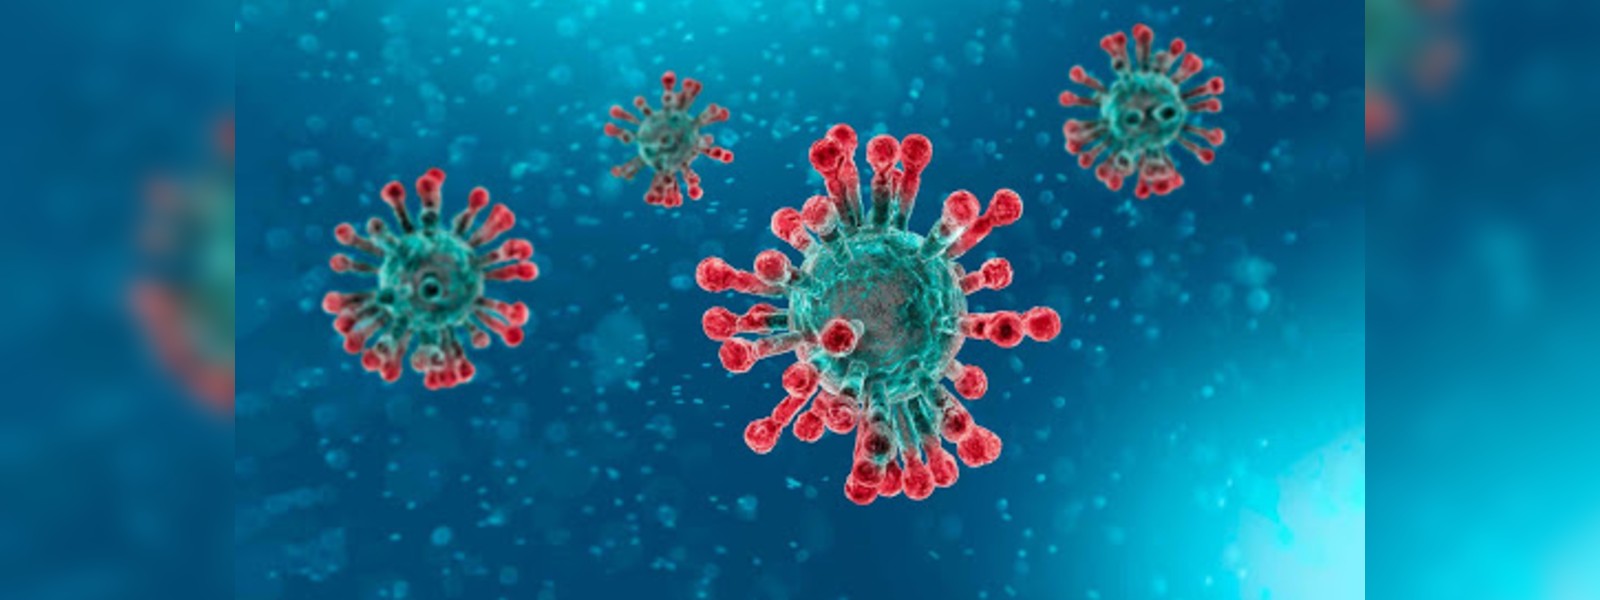 Coronavirus patient from Jinthupitiya tests negative